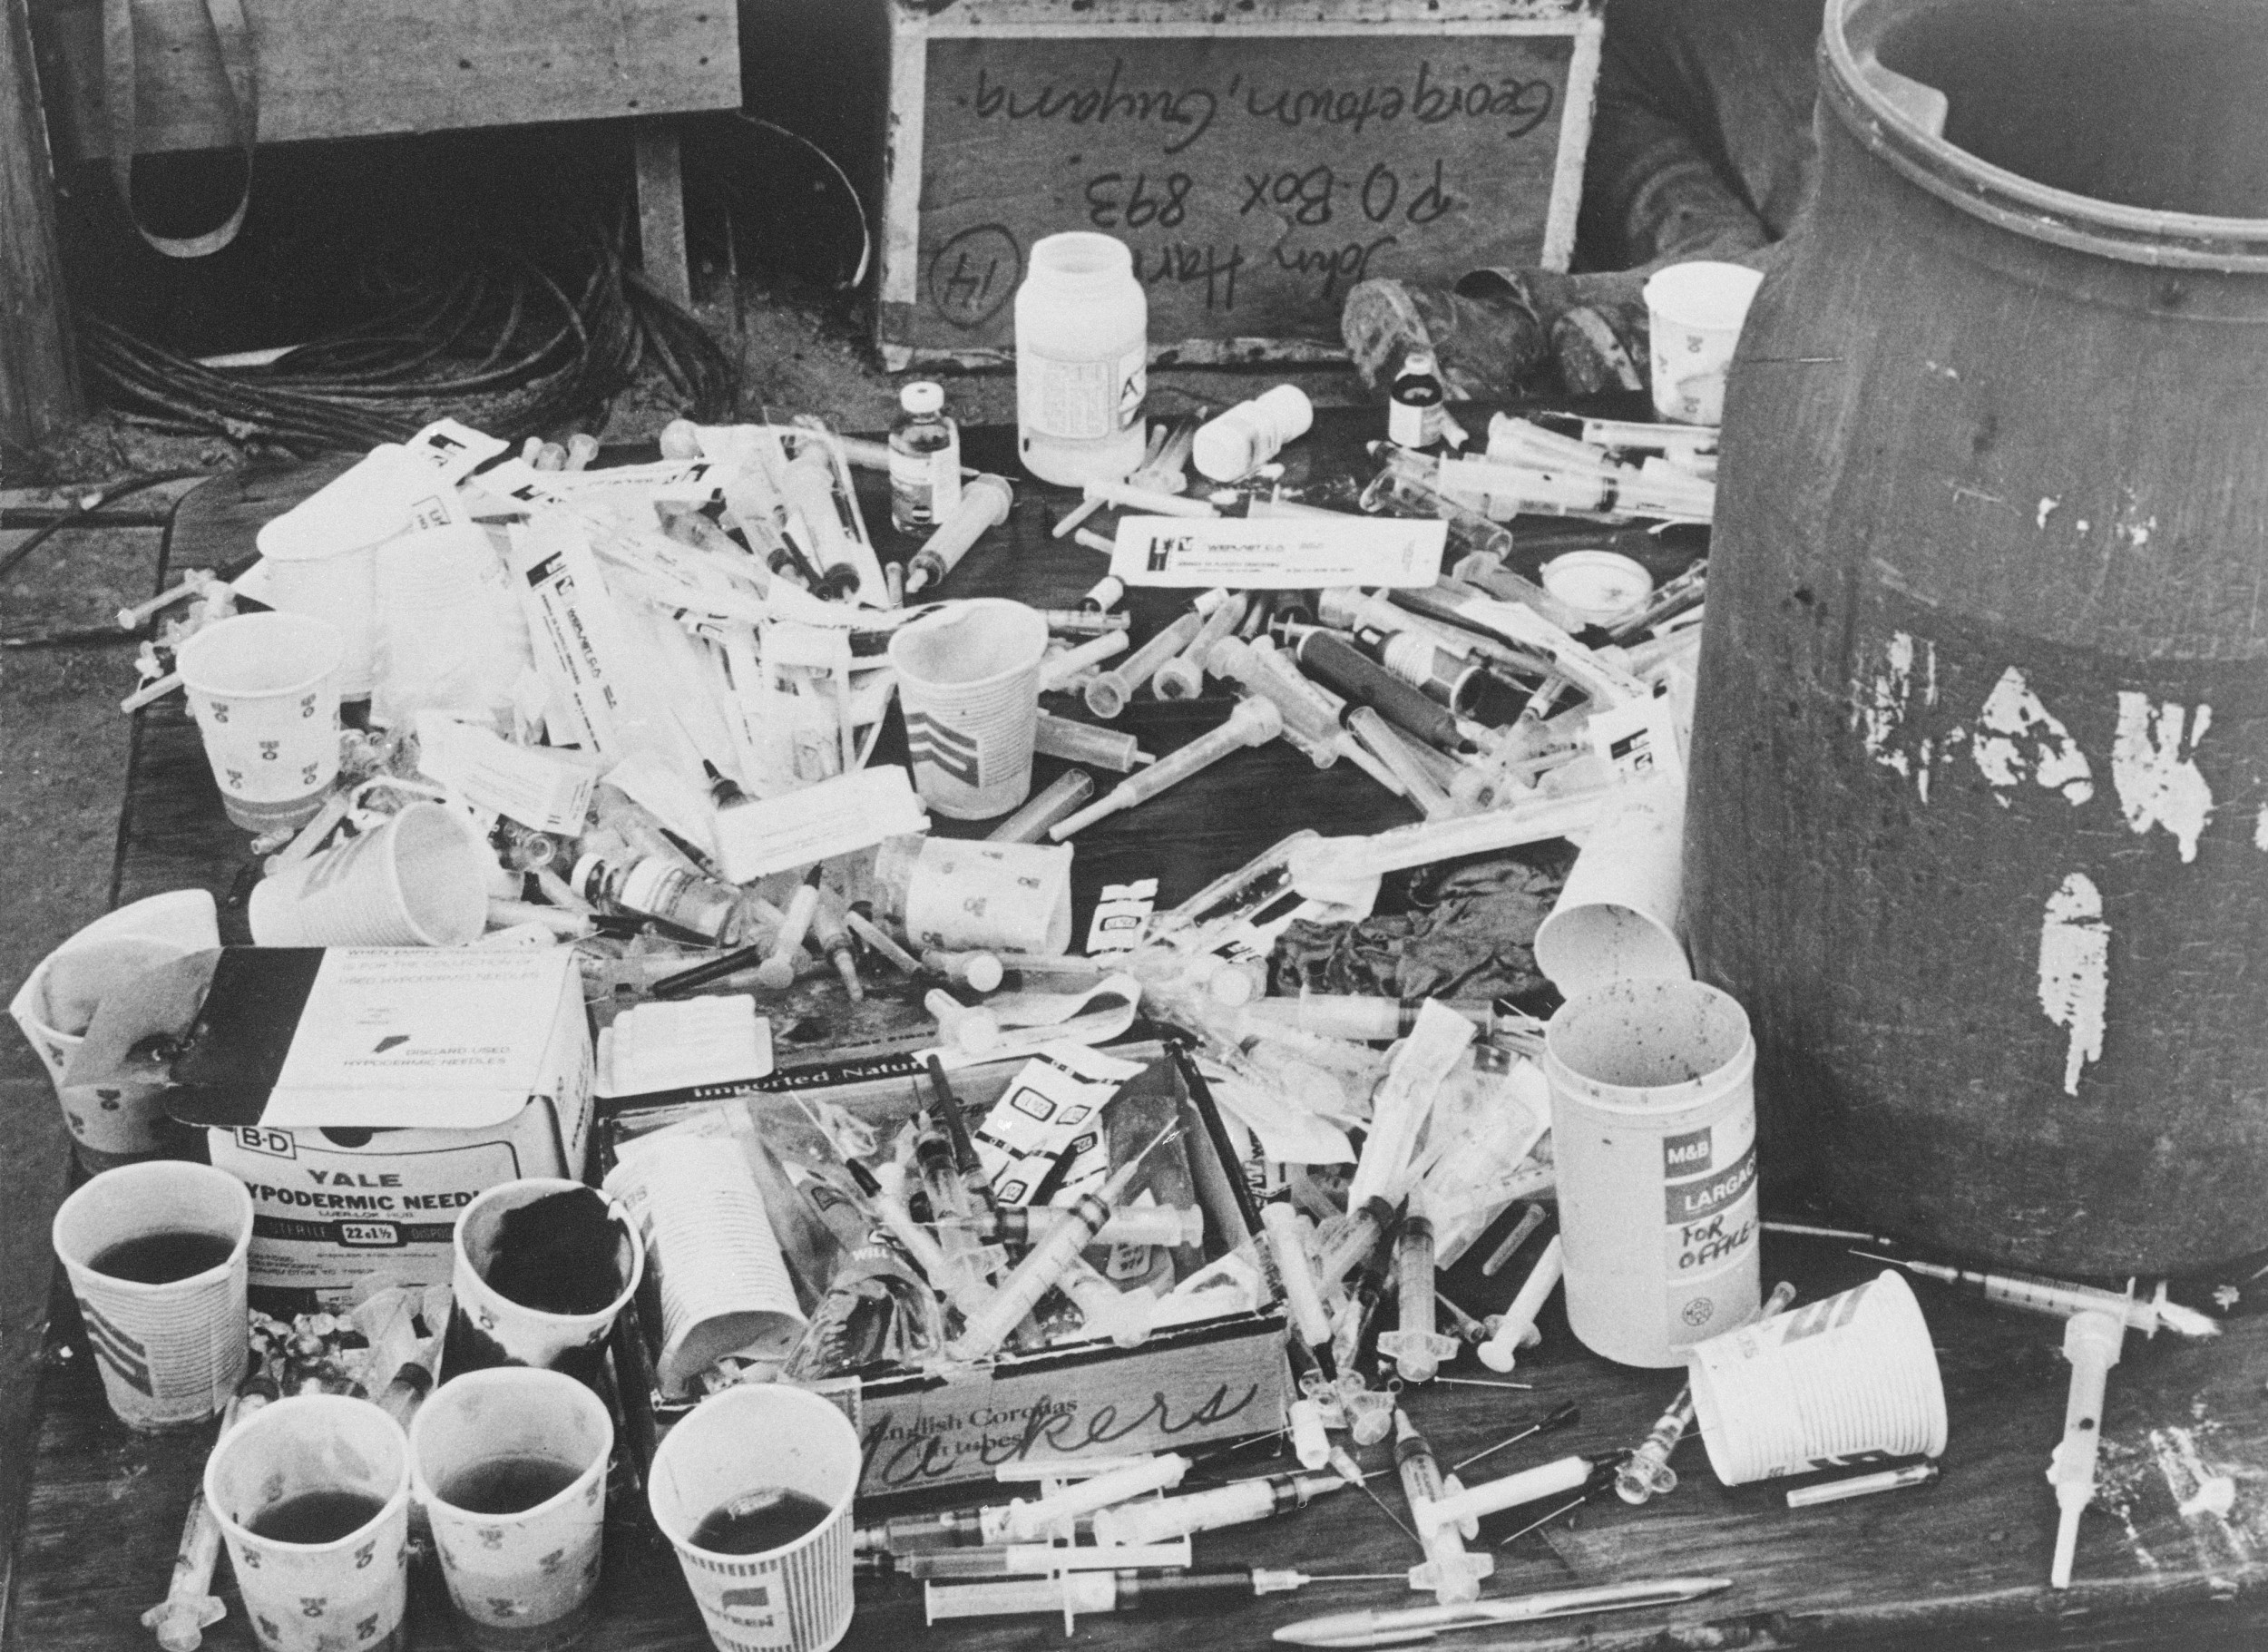 Jonestown cyanide drink syringes